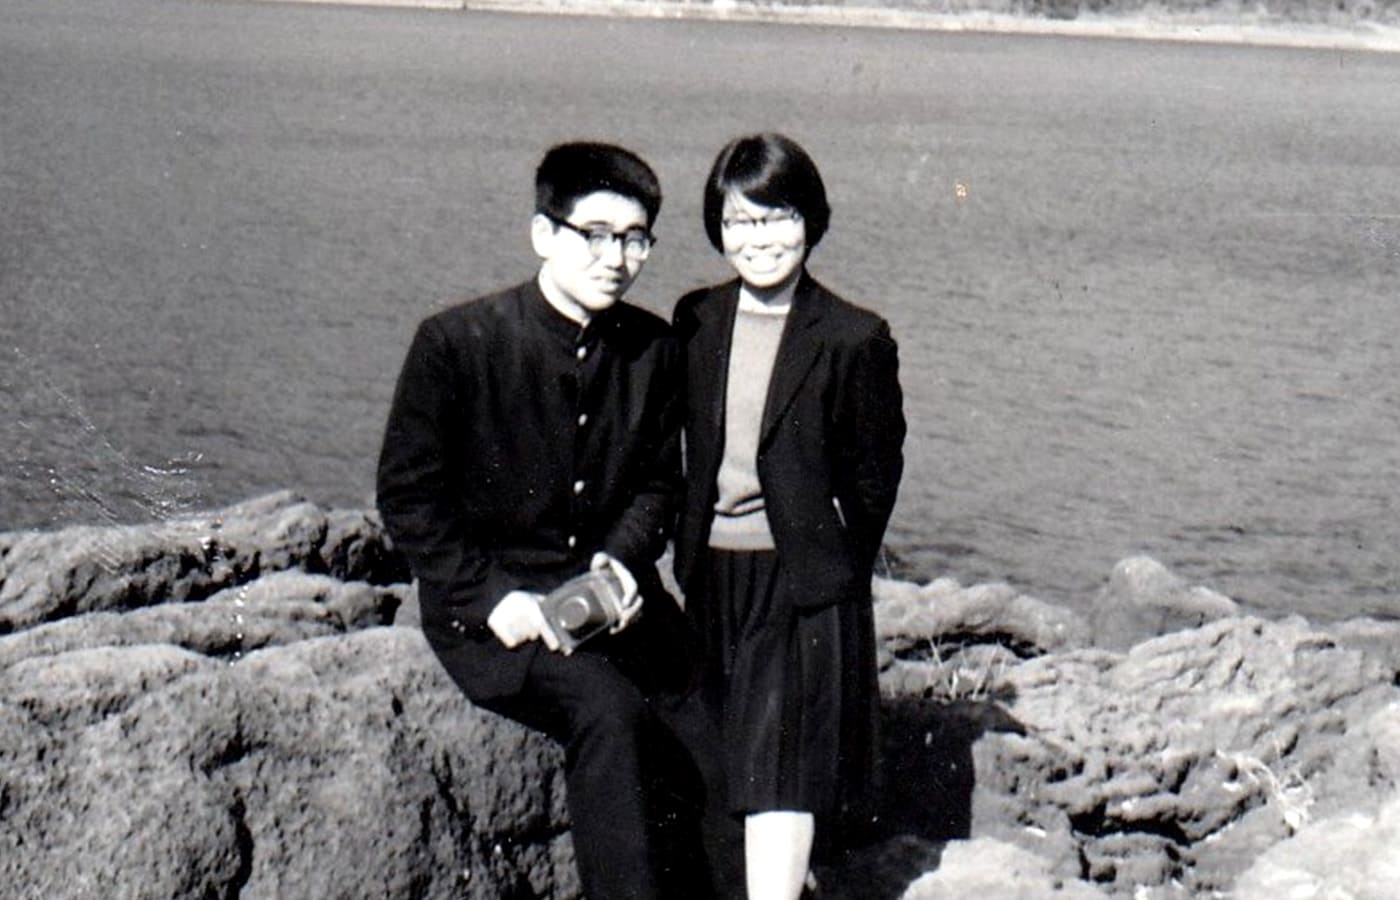 妻 浩子とは高校時代に出会った。学生運動に没頭した同志でもあった（1960）